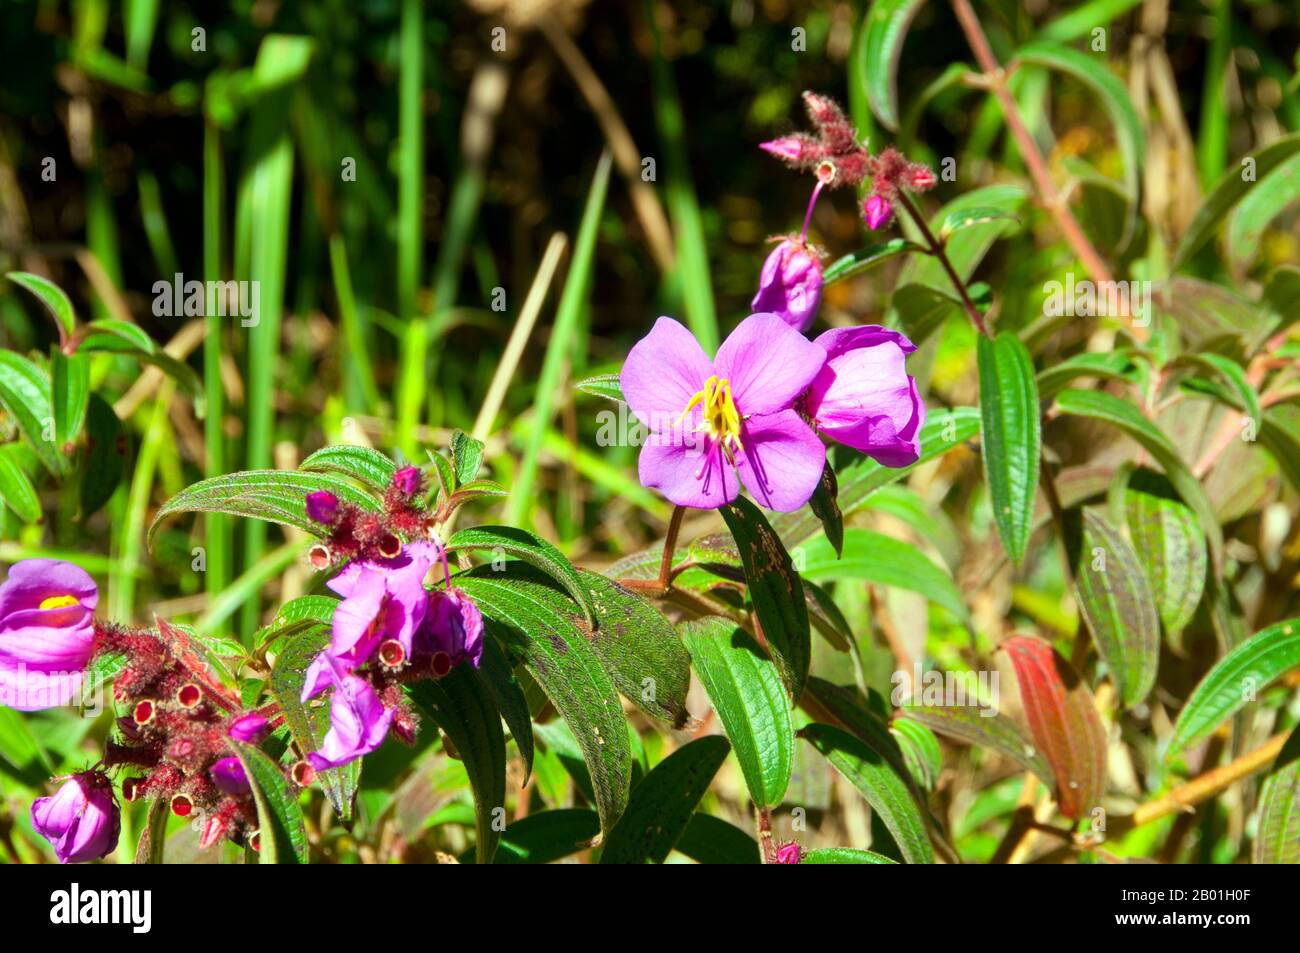 Thaïlande : fleurs sauvages à Phu Luang Wildlife Sanctuary, province de Loei. La province de Loei (thaï : เลย) est située dans le nord-est de la Thaïlande. Les provinces voisines sont (de l'est dans le sens des aiguilles d'une montre) Nong Khai, Udon Thani, Nongbua Lamphu, Khon Kaen, Phetchabun, Phitsanulok. Au nord, elle borde les provinces de Xaignabouli et Vientiane du Laos. La province est couverte de basses montagnes, tandis que la capitale Loei est située dans un bassin fertile. La rivière Loei, qui traverse la province, est un affluent du Mékong. Banque D'Images